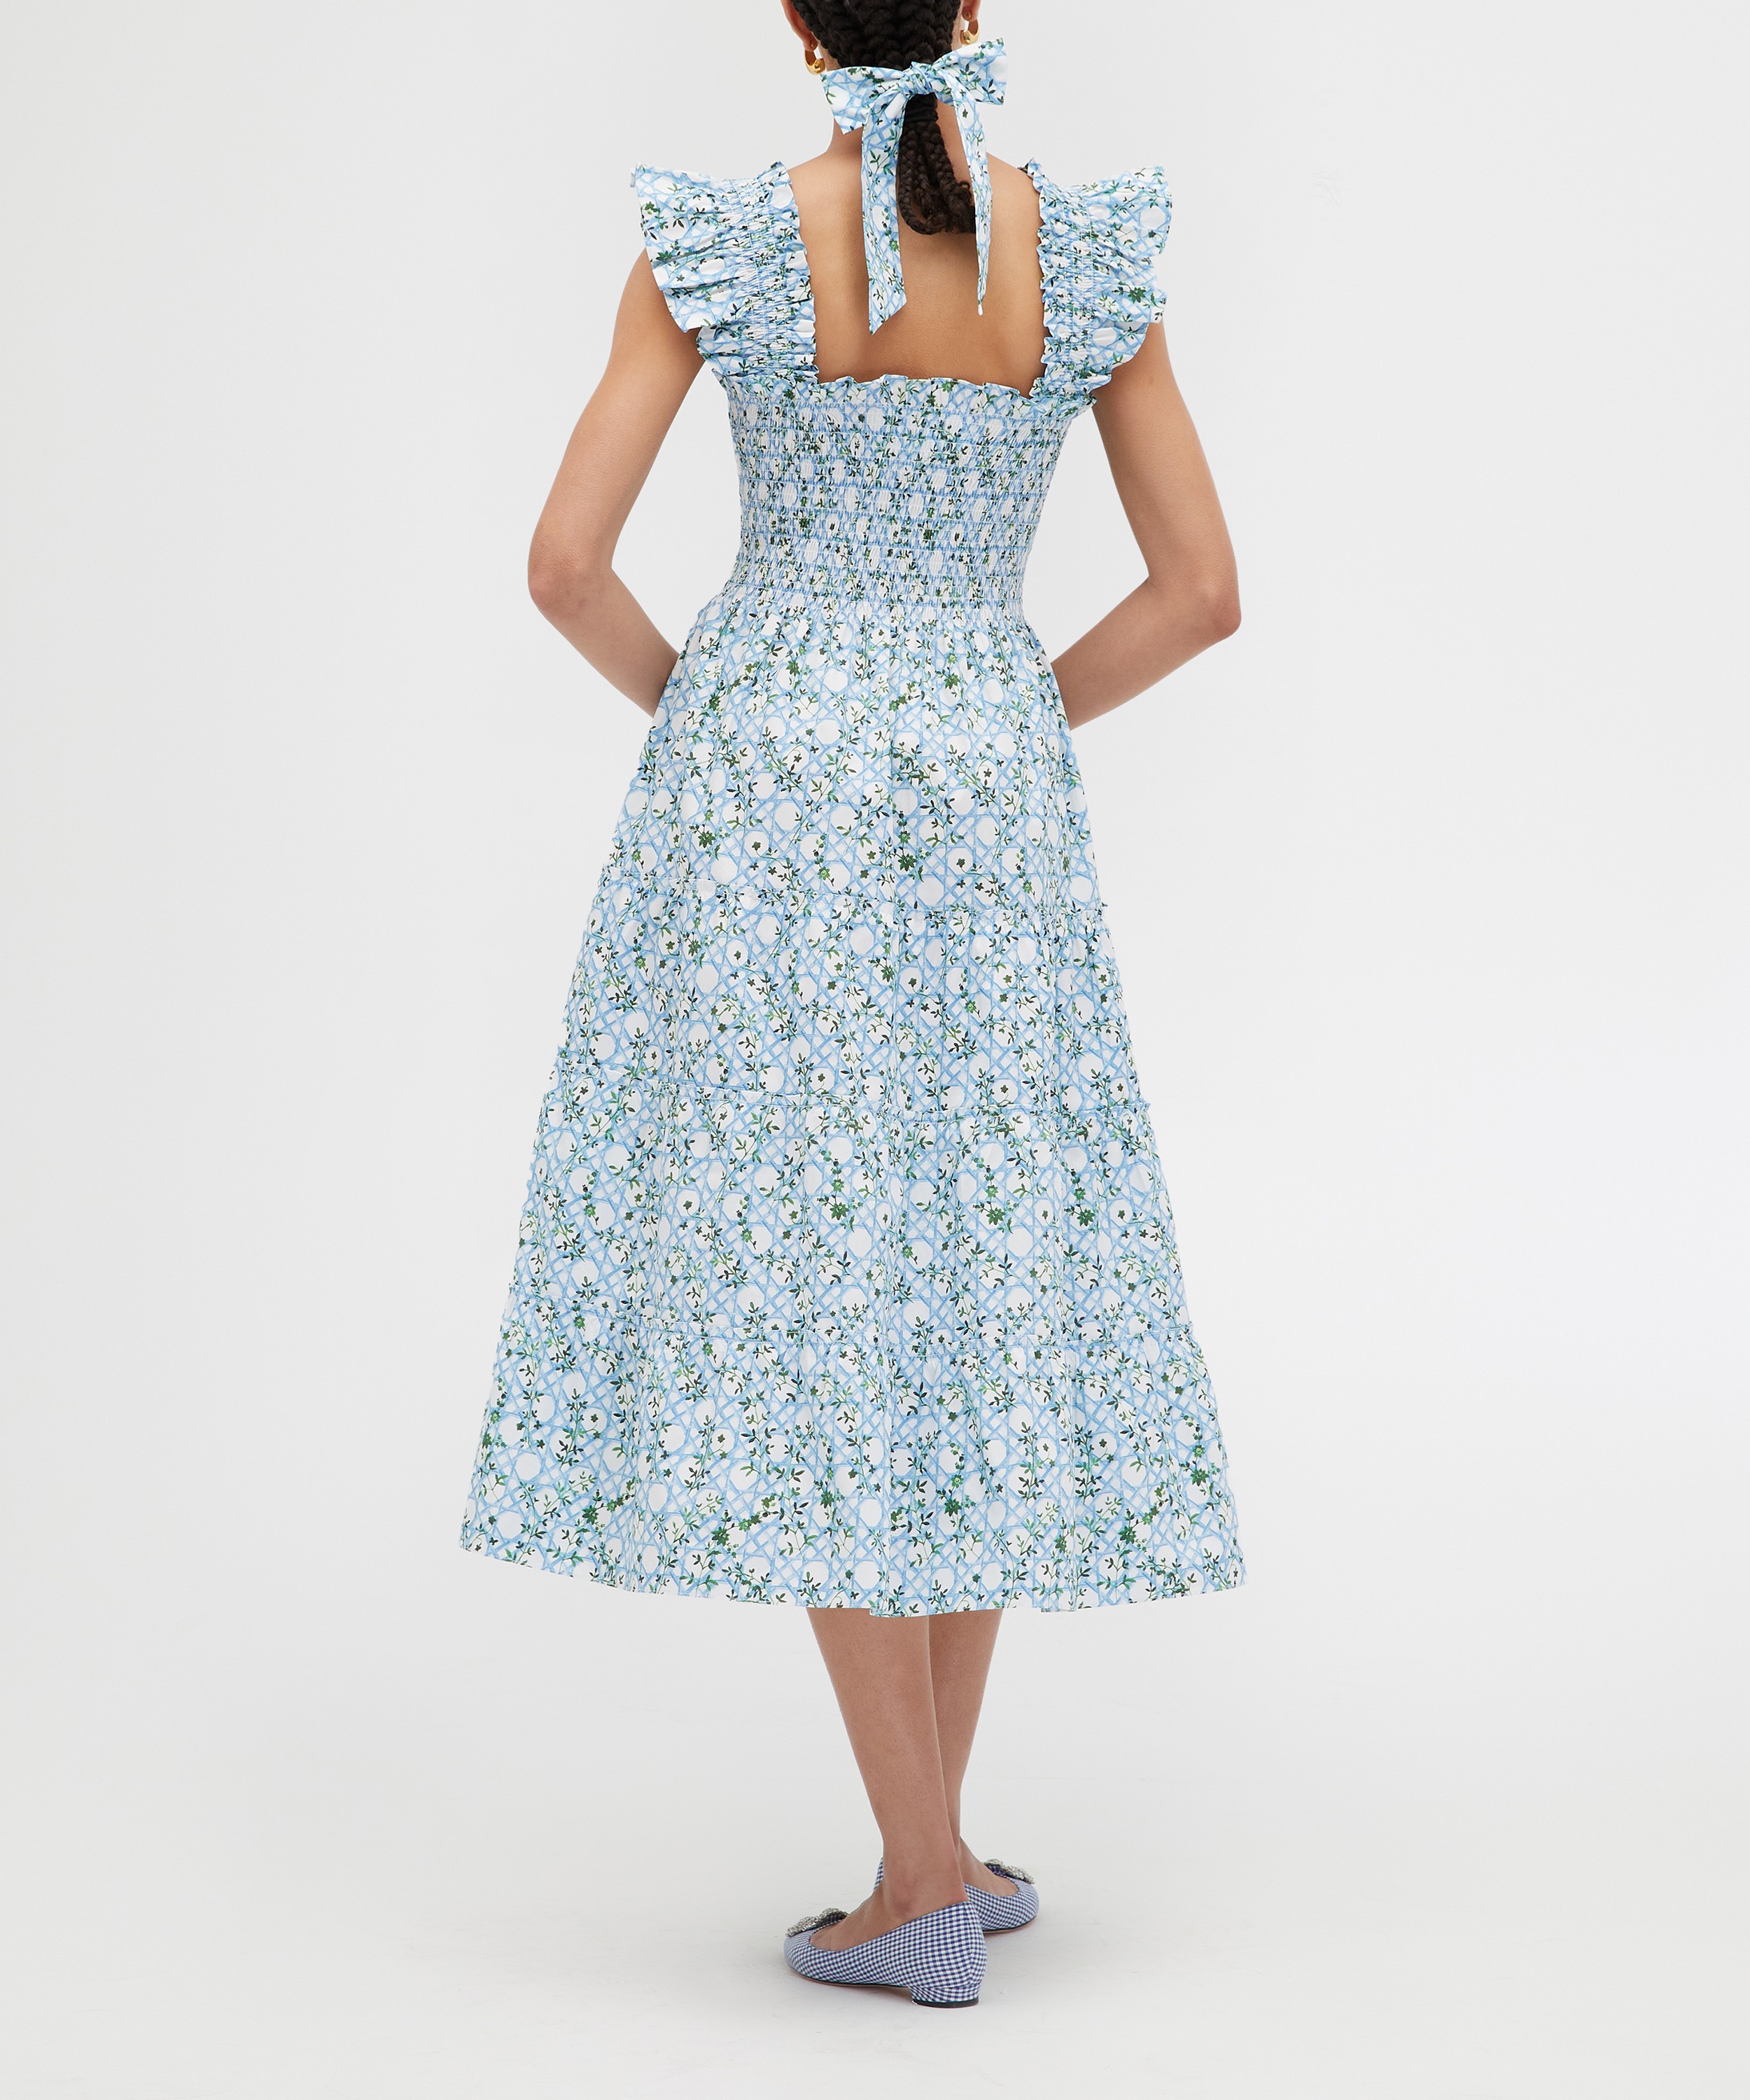 Hill House Home - Ellie Nap Dress in Blue Basketweave Vine image number 3